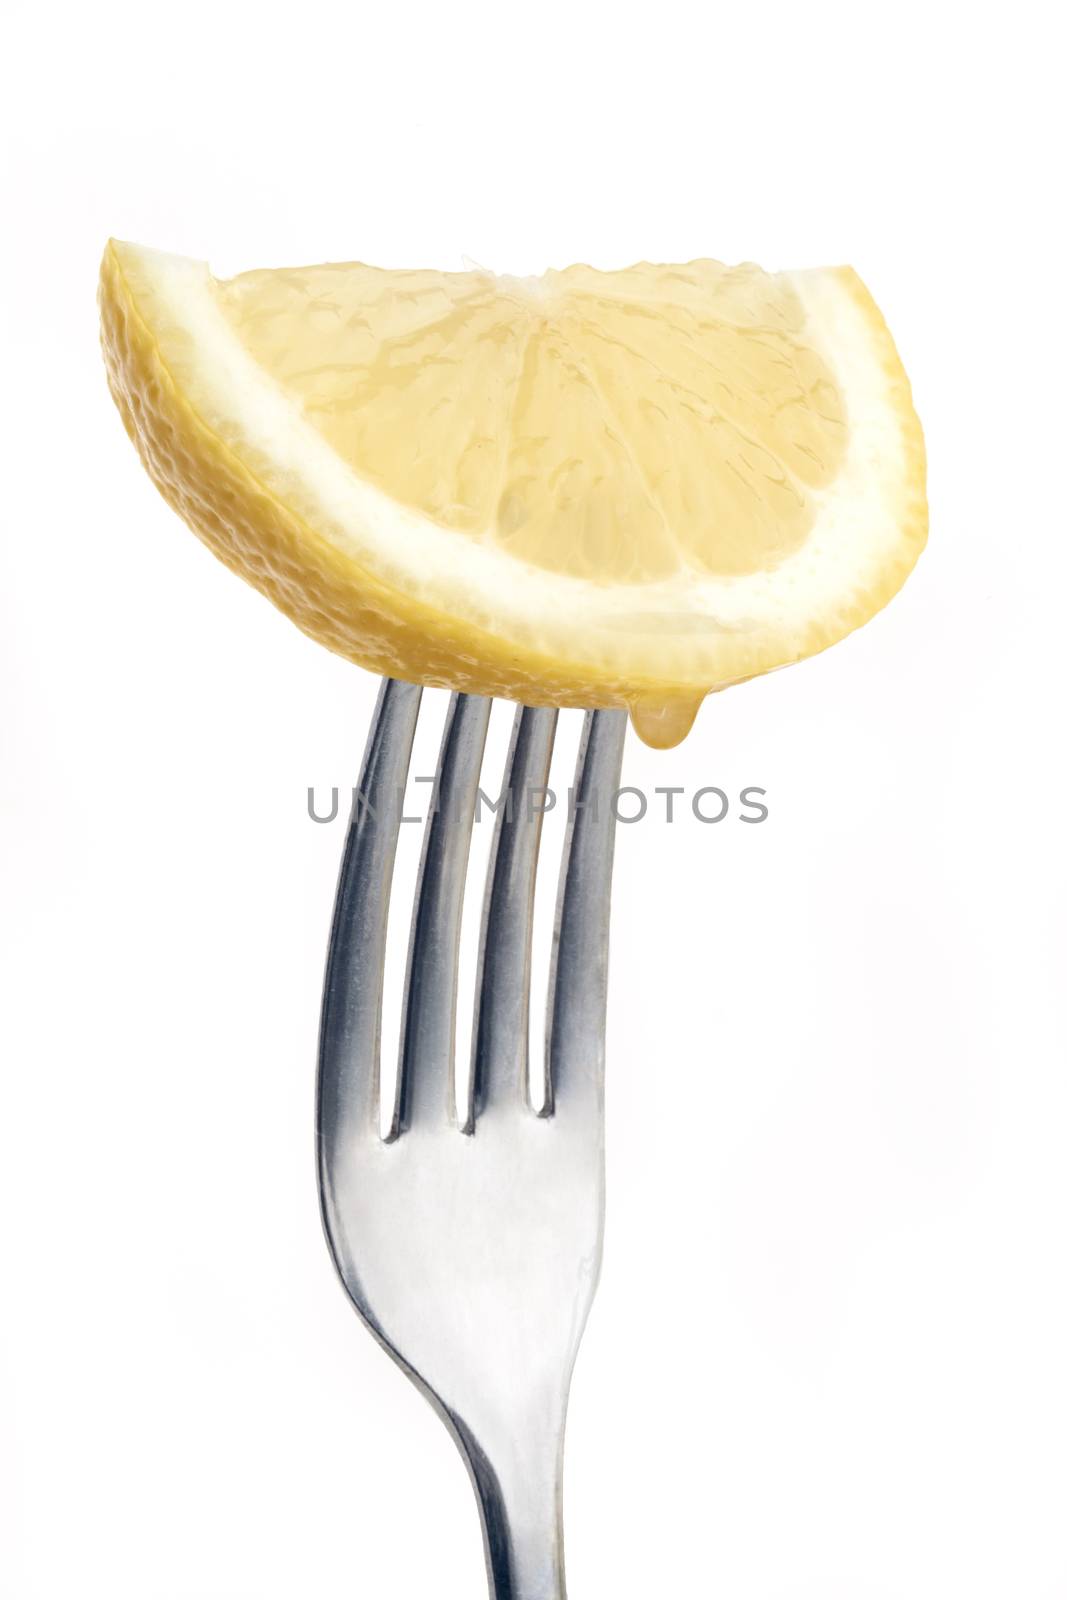 slice of lemon pierced on a fork against plain background